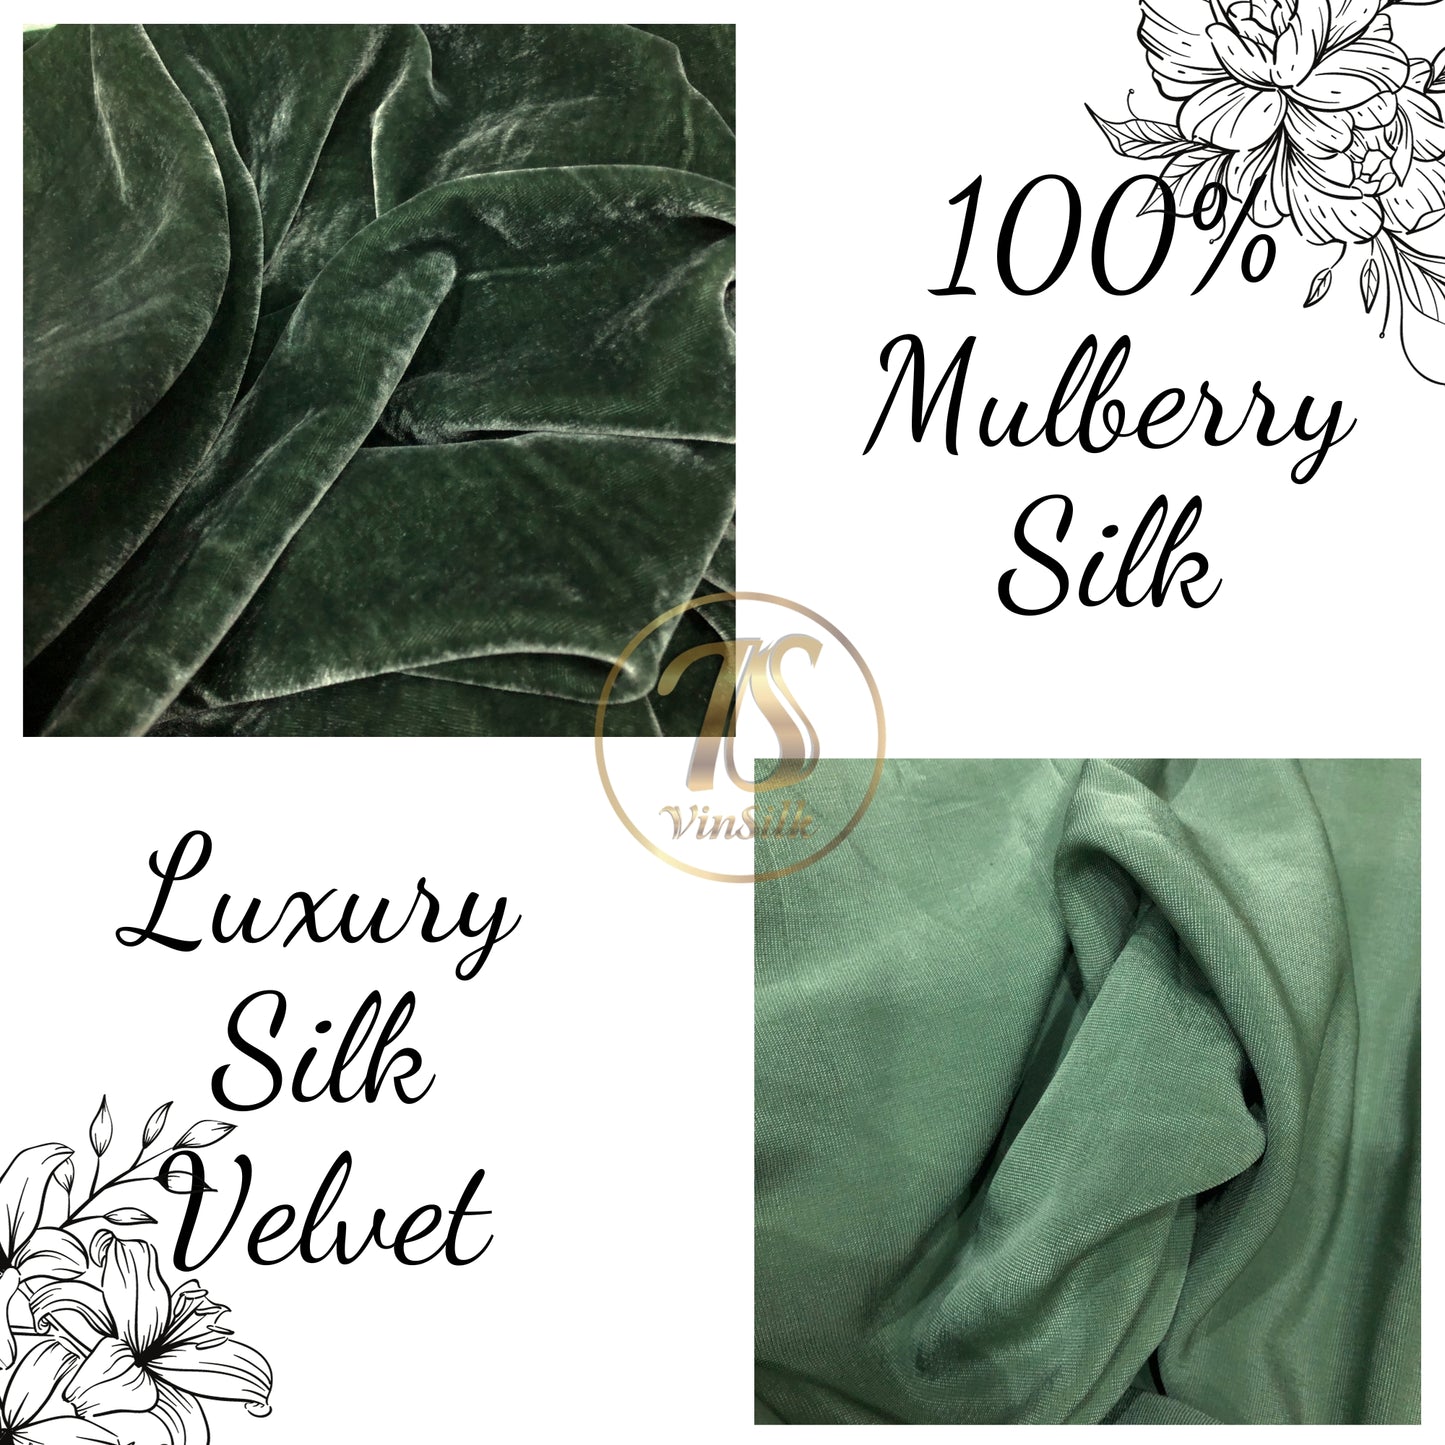 100% MULBERRY SILK VELVET fabric by the yard - Luxury Silk Velvet for Dress, Skirt, High End Garment - Silk for sewing - Green silk velvet